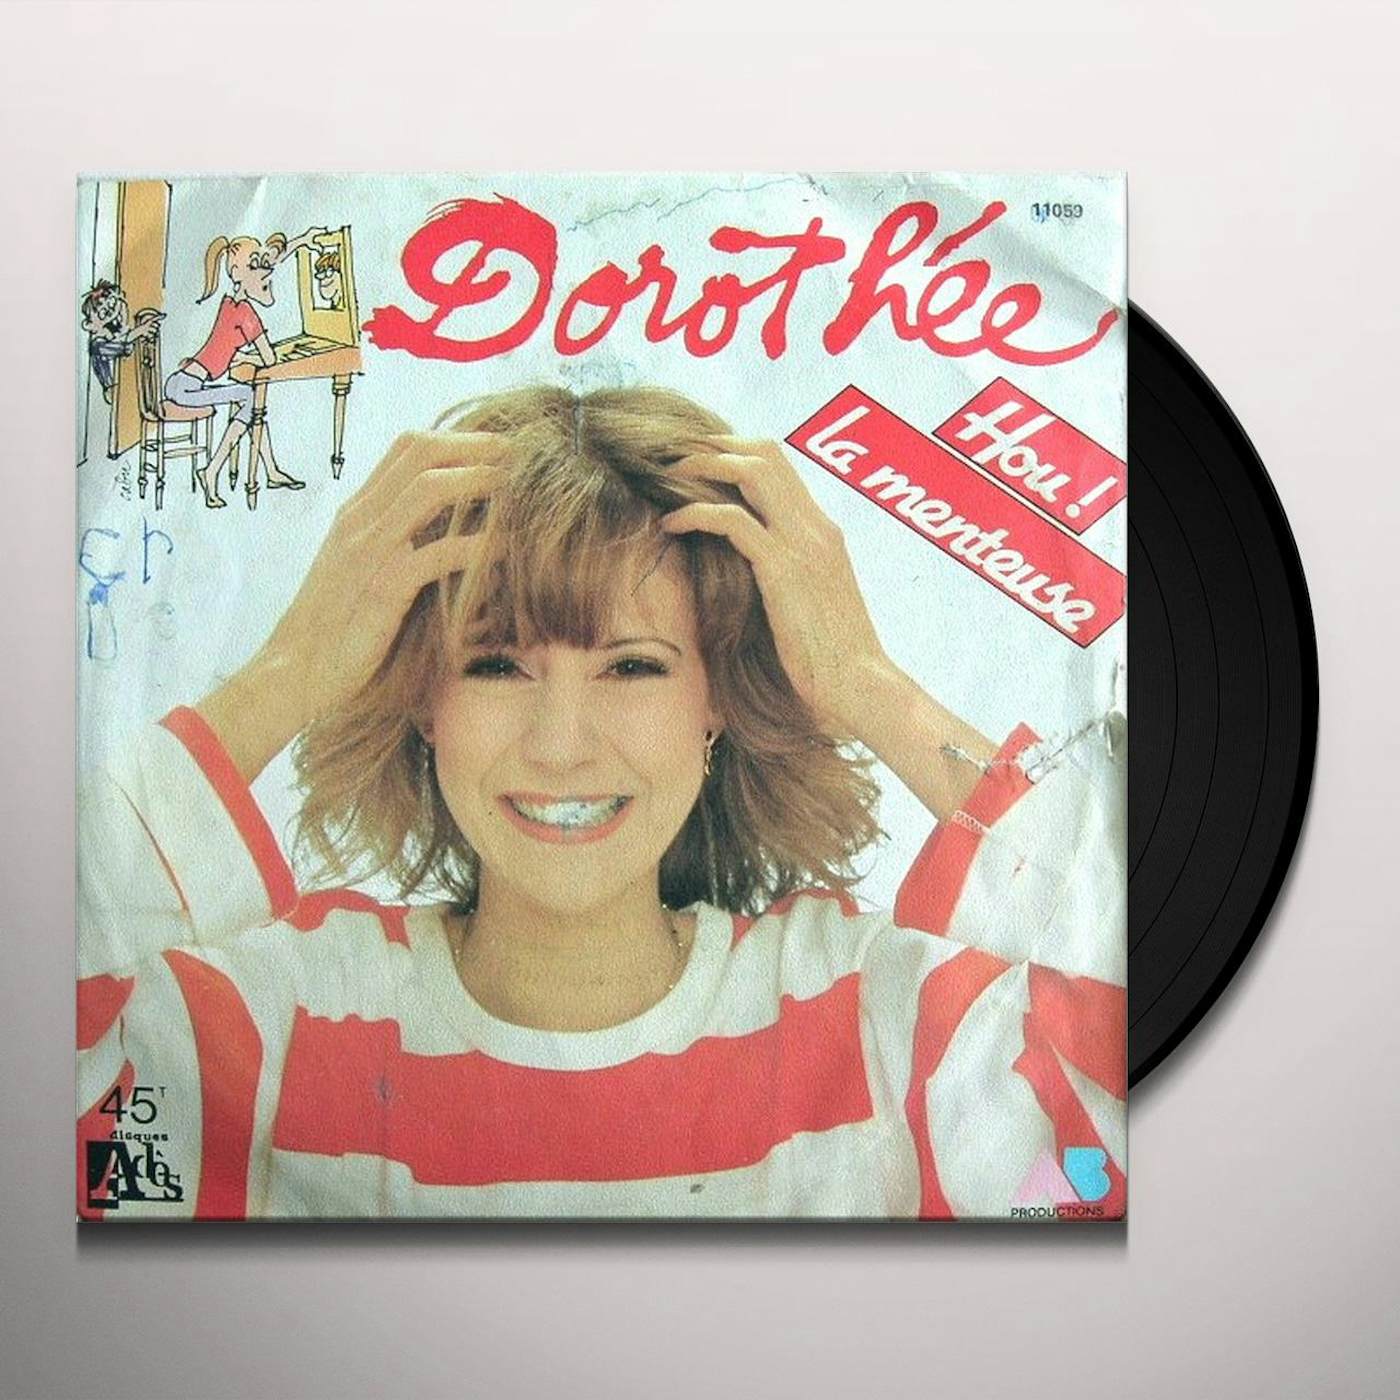 Dorothee HOU LA MENTEUSE Vinyl Record